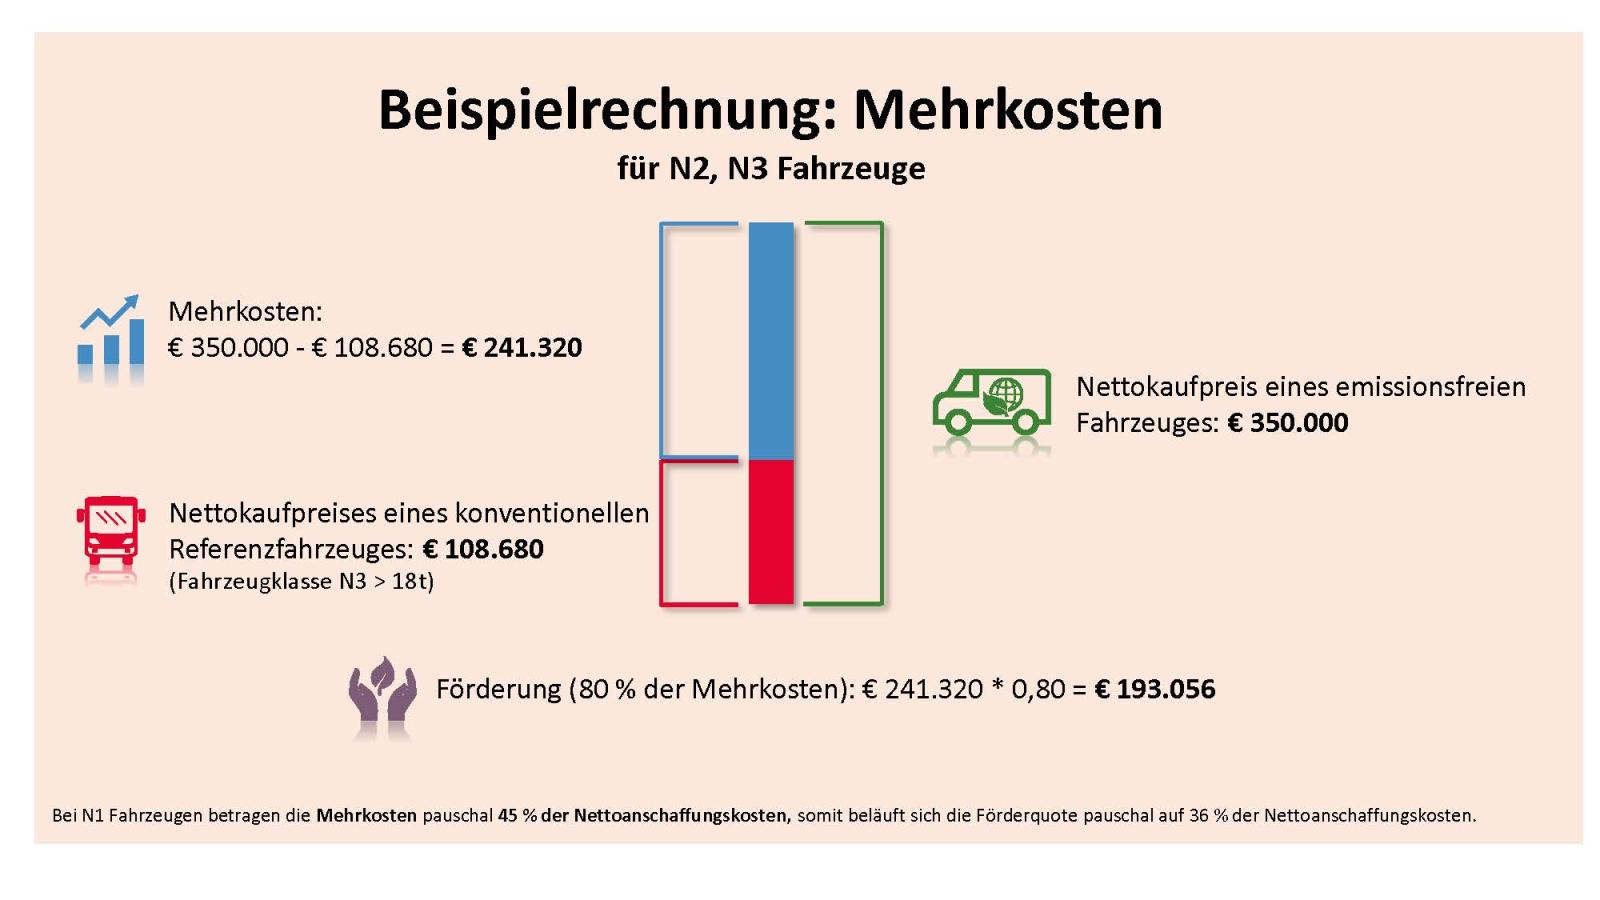 Beispielrechnung: Mehrkosten für N2, N3 FahrzeugeNettokaufpreis eines konventionellen Referenzfahrzeuges: 108.680€ (Fahrzeugklasse N3 > 18t)Nettokaufpreis eines emissionsfreien Fahrzeuges: 350.000€Mehrkosten: 350.000€ - 108.680€ = 241.320€Förderung (80% der Mehrkosten): 241.320€*0,80 = 193.056€Bei N1 Fahrzeugen betragen die Mehrkosten pauschal 45% der Nettoanschaffungskosten, somit beläuft sich die Förderquote pauschal auf 36% der Nettoanschaffungskosten.